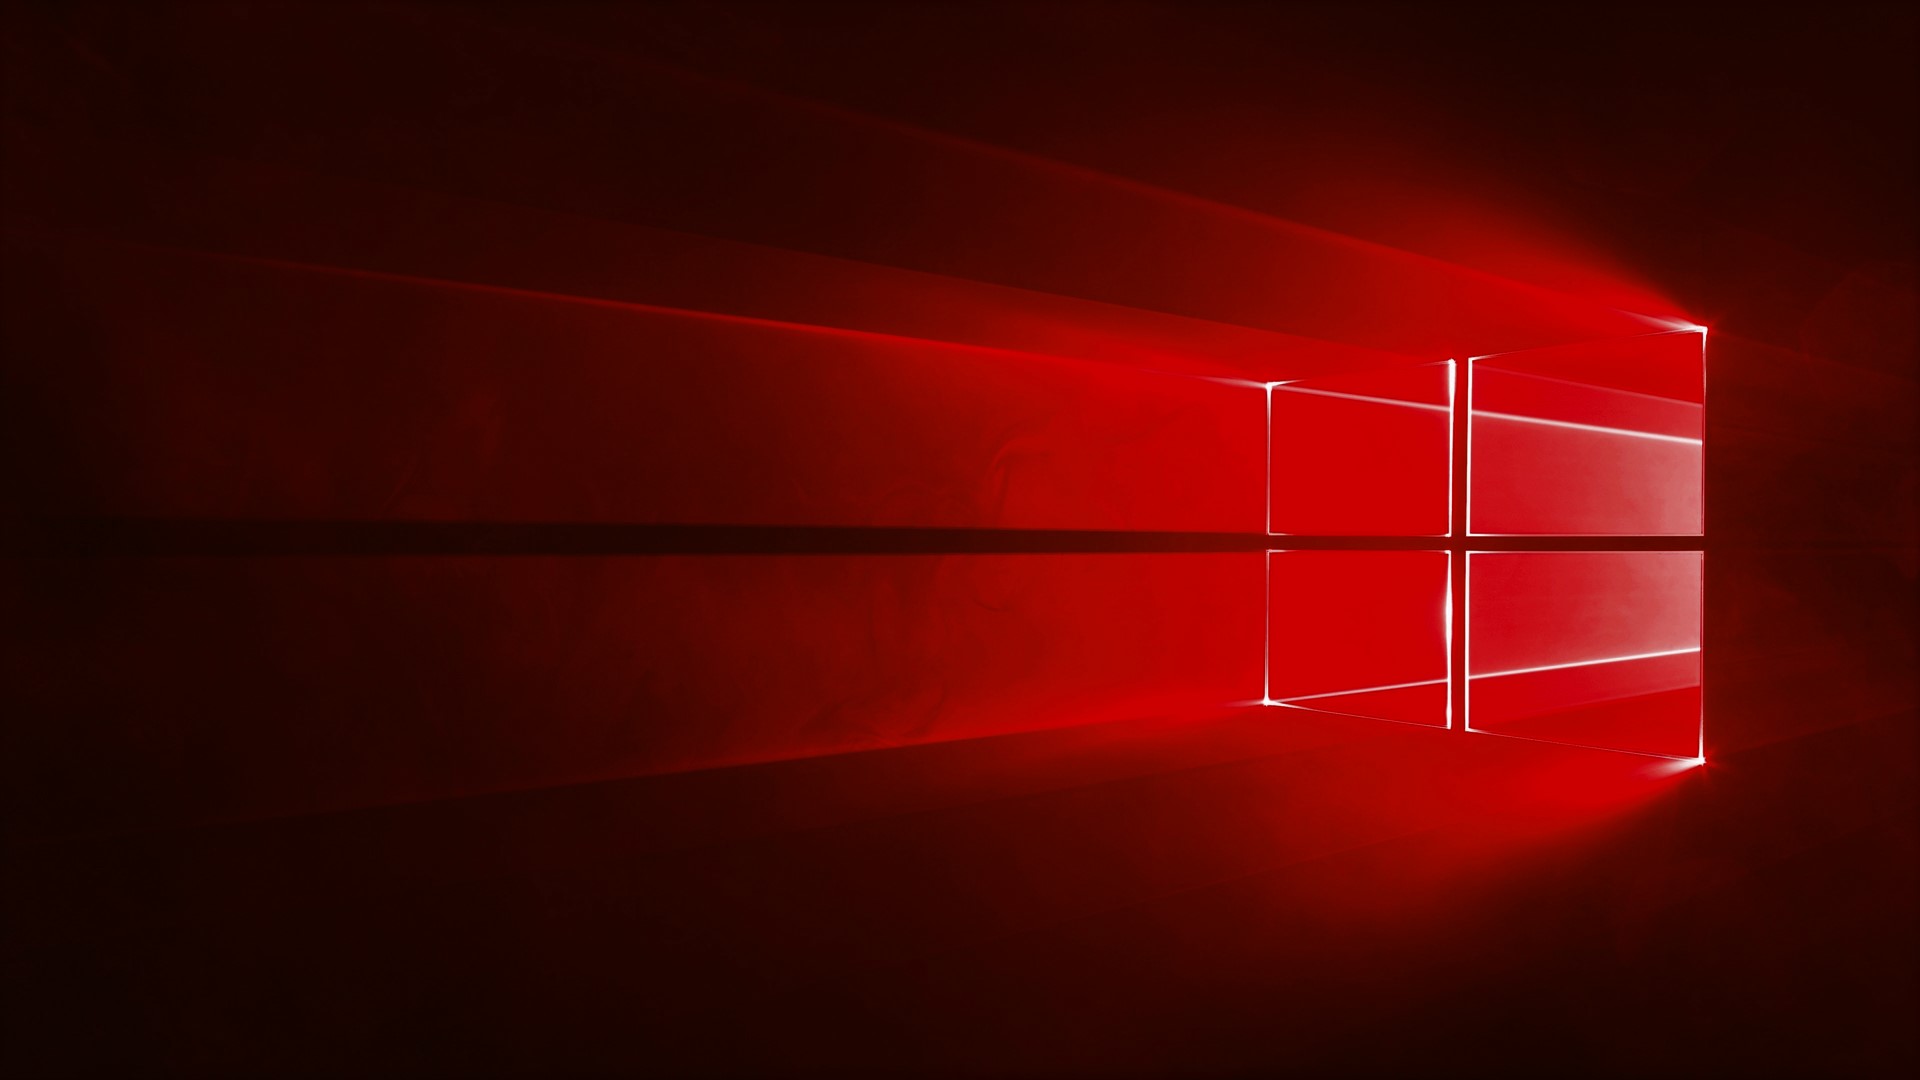 Windows 10 Redstone 3 (RS3) 公眾預覽版本 Build 16193 發佈 + 繁體中文版下載 | iLog